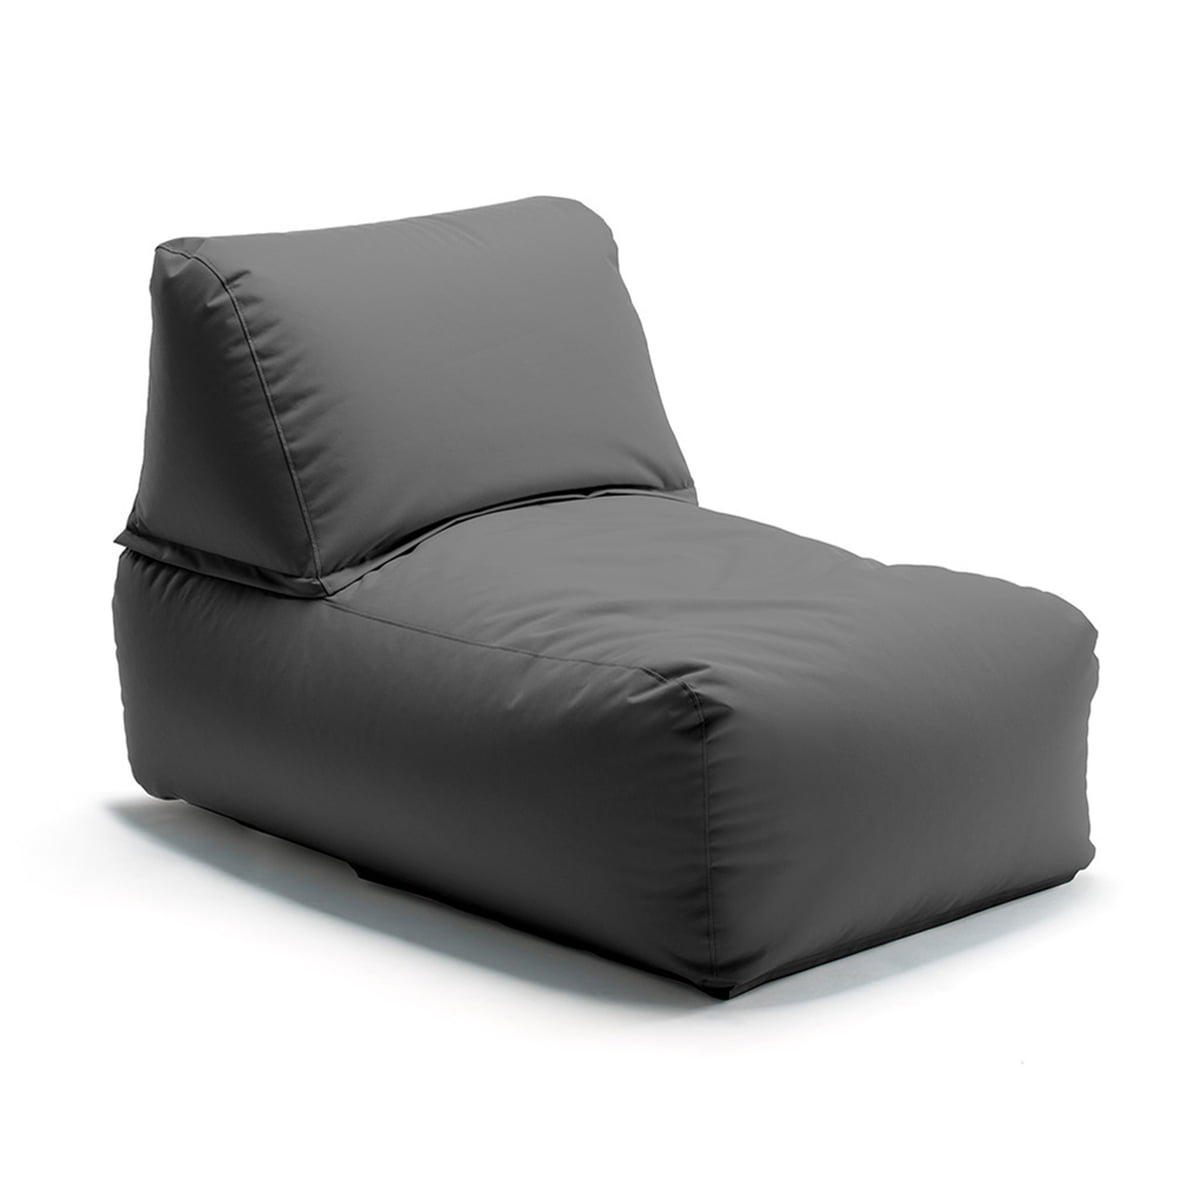 Sitting Bull - Outdoor / Connox | Indoor Zipp Armchair